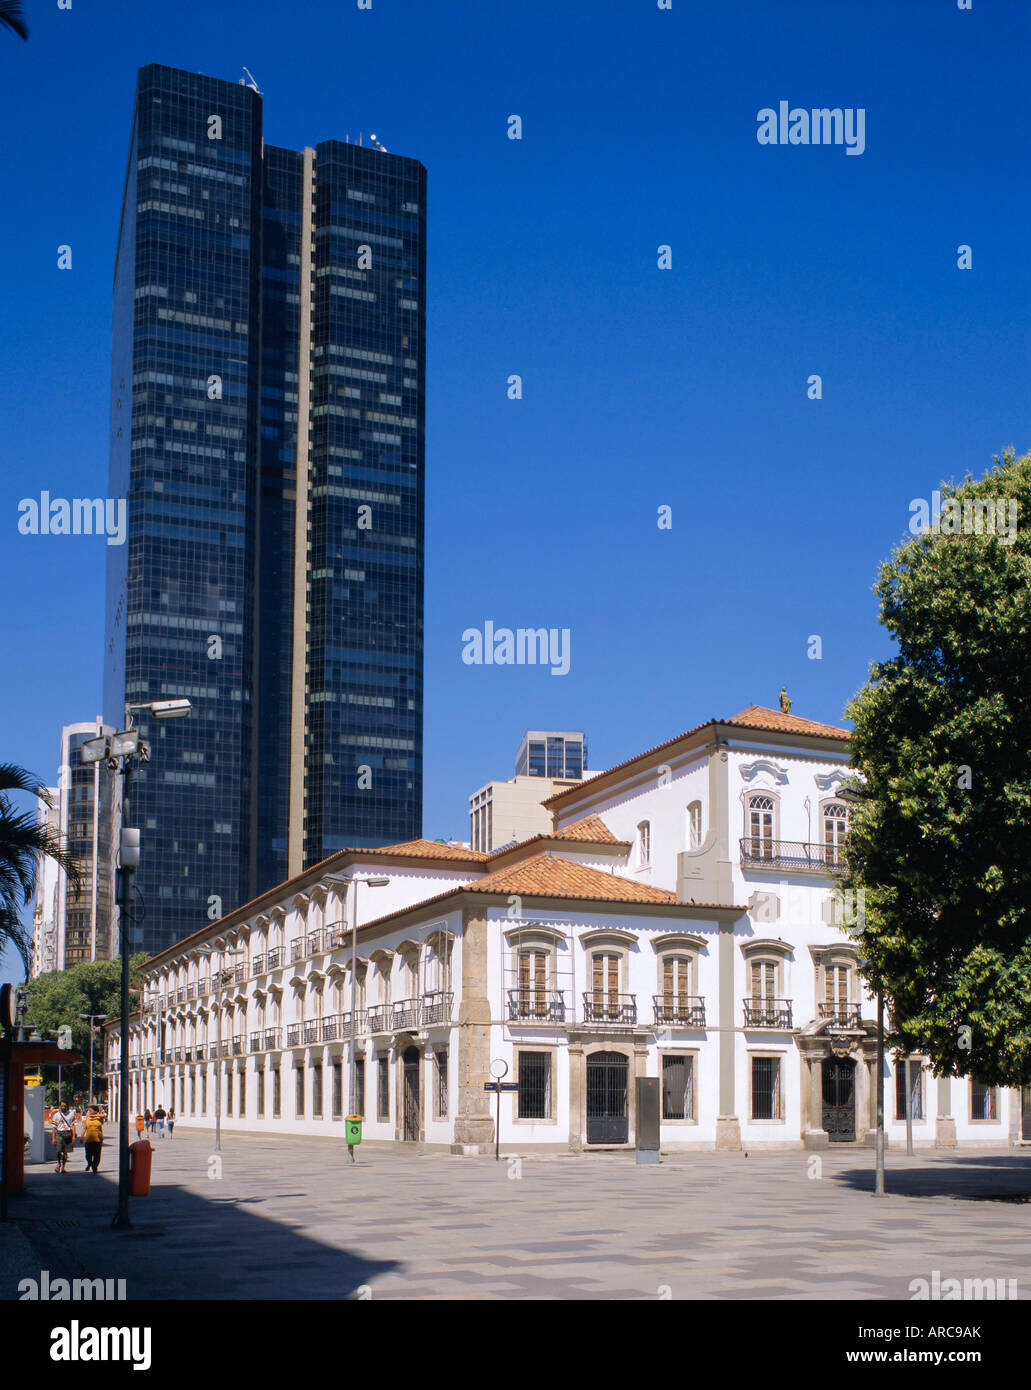 Praca 15 November, Rio de Janeiro, Brazil Stock Photo